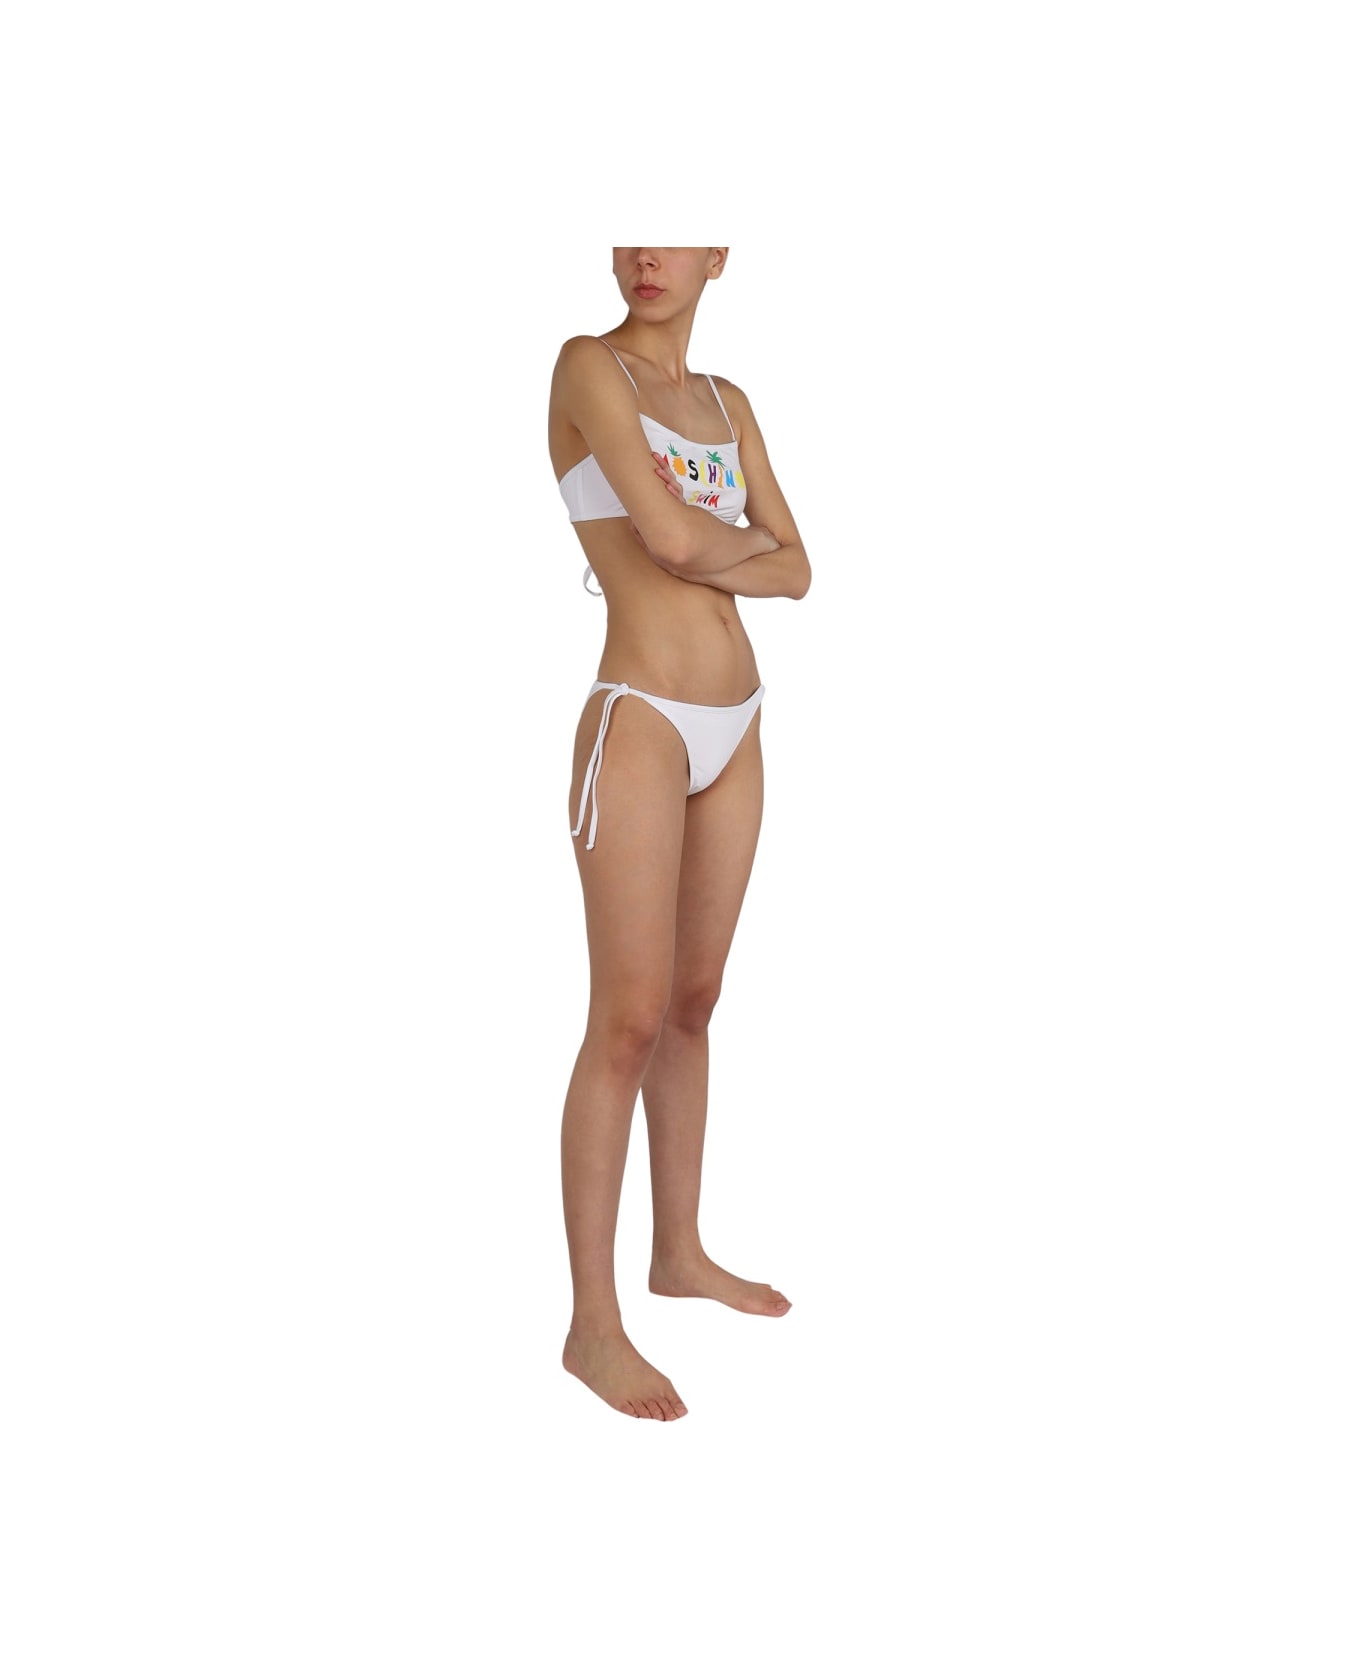 Moschino Bikini Briefs - WHITE